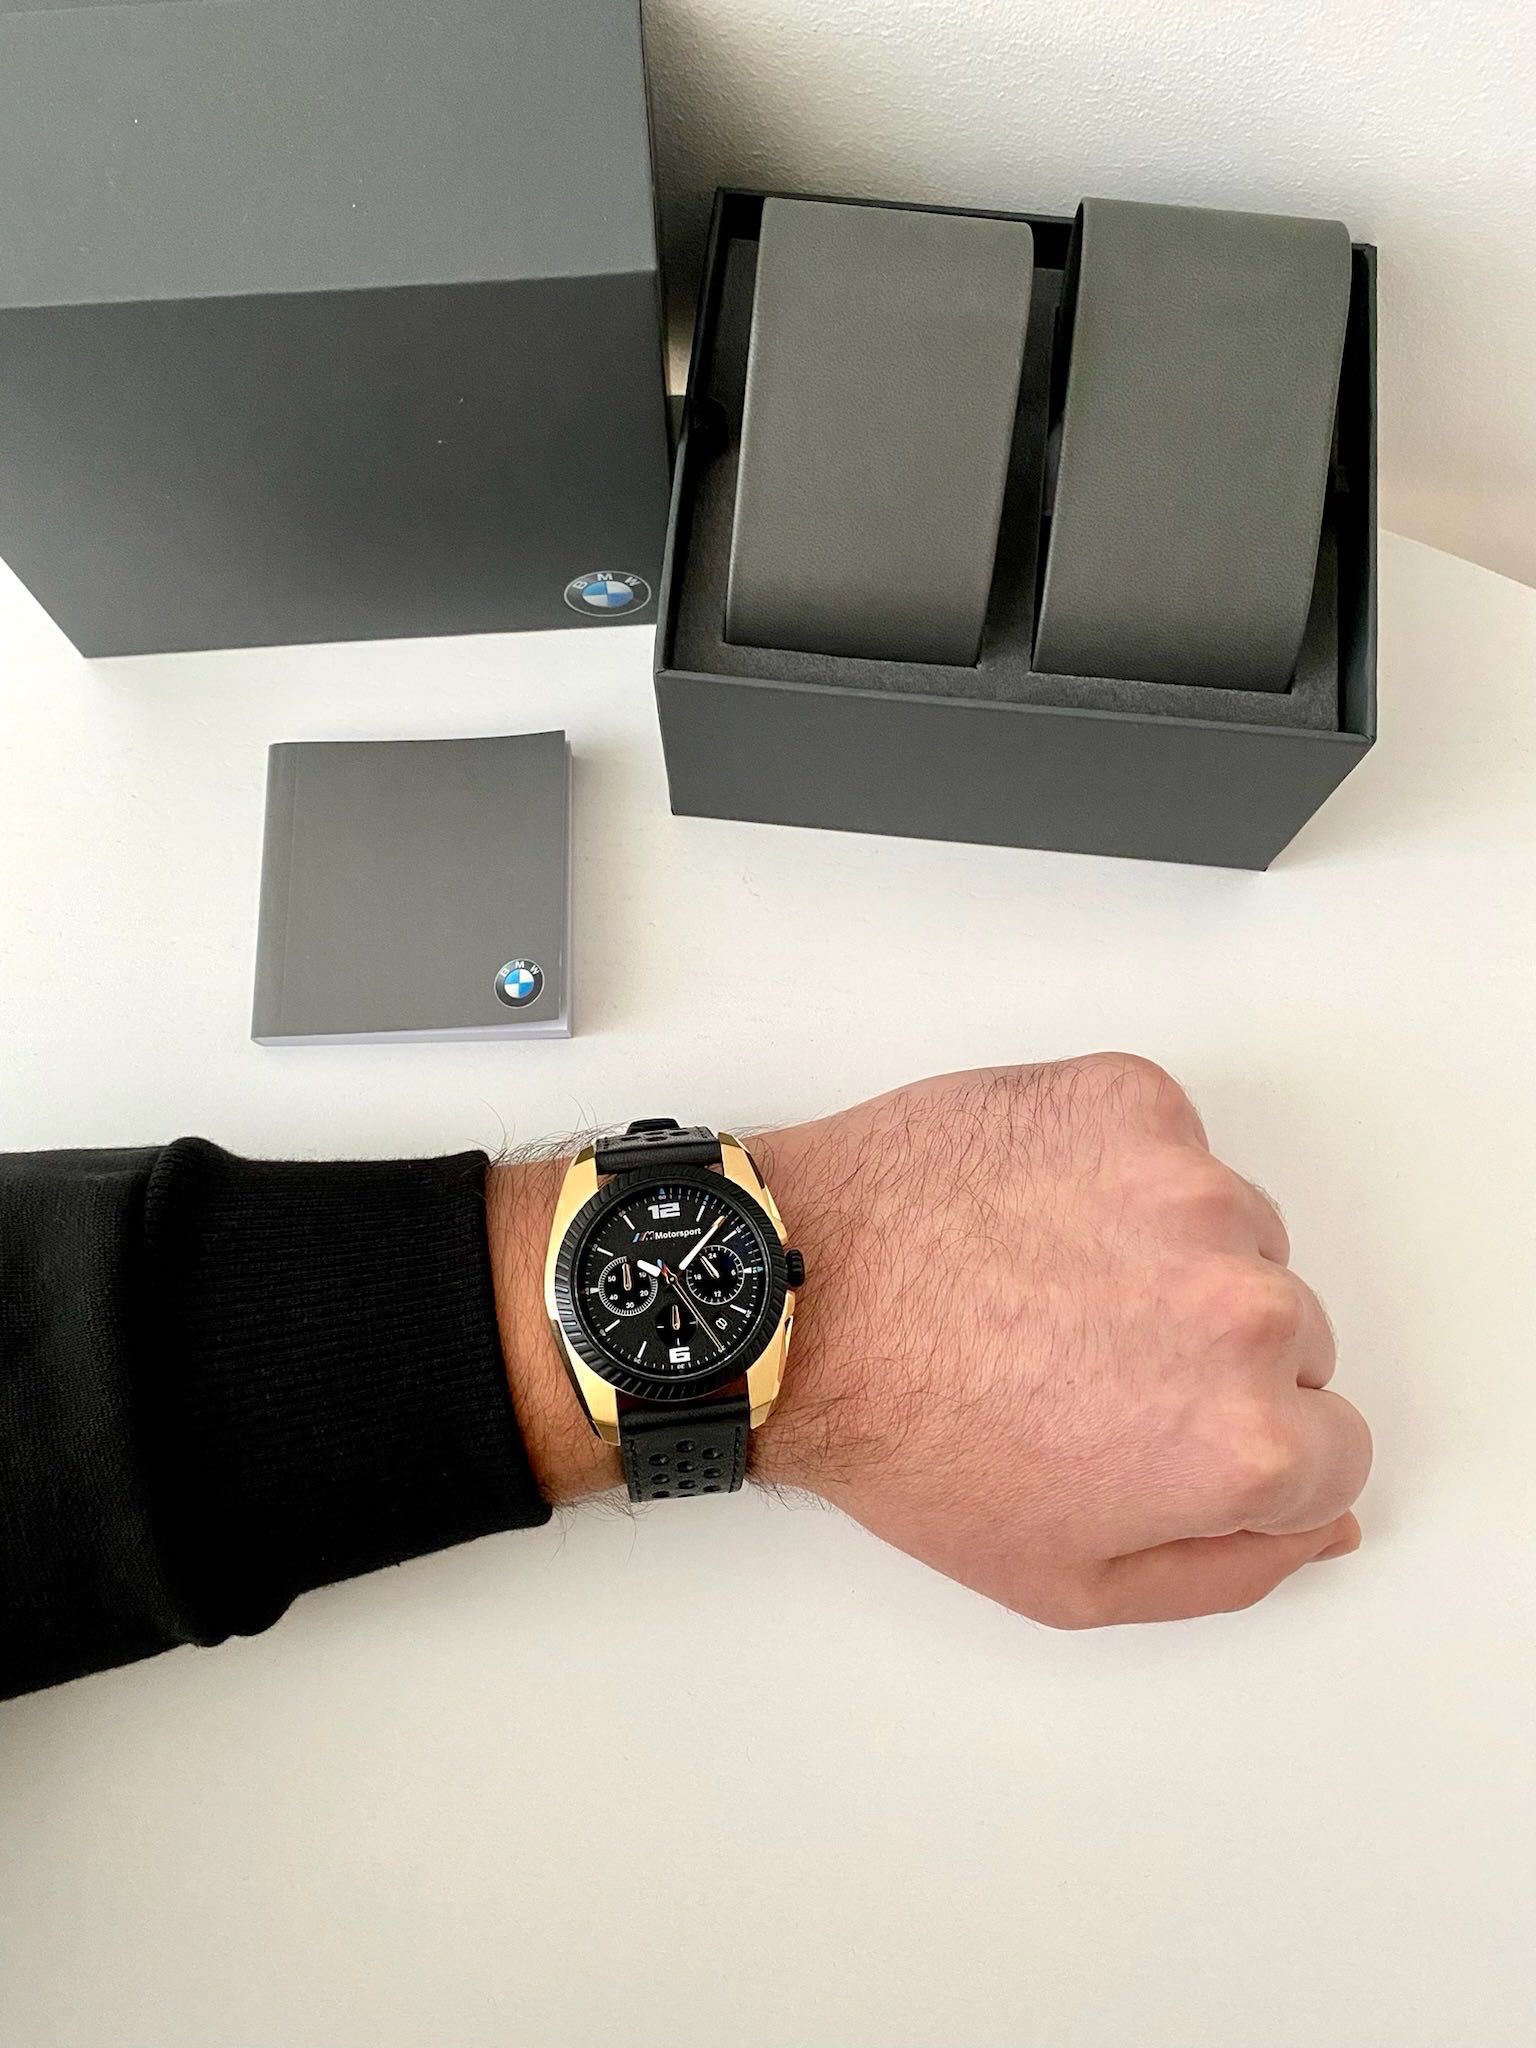 BMW чоловічий годинник подарунок чоловіку мужские часы подарок мужу